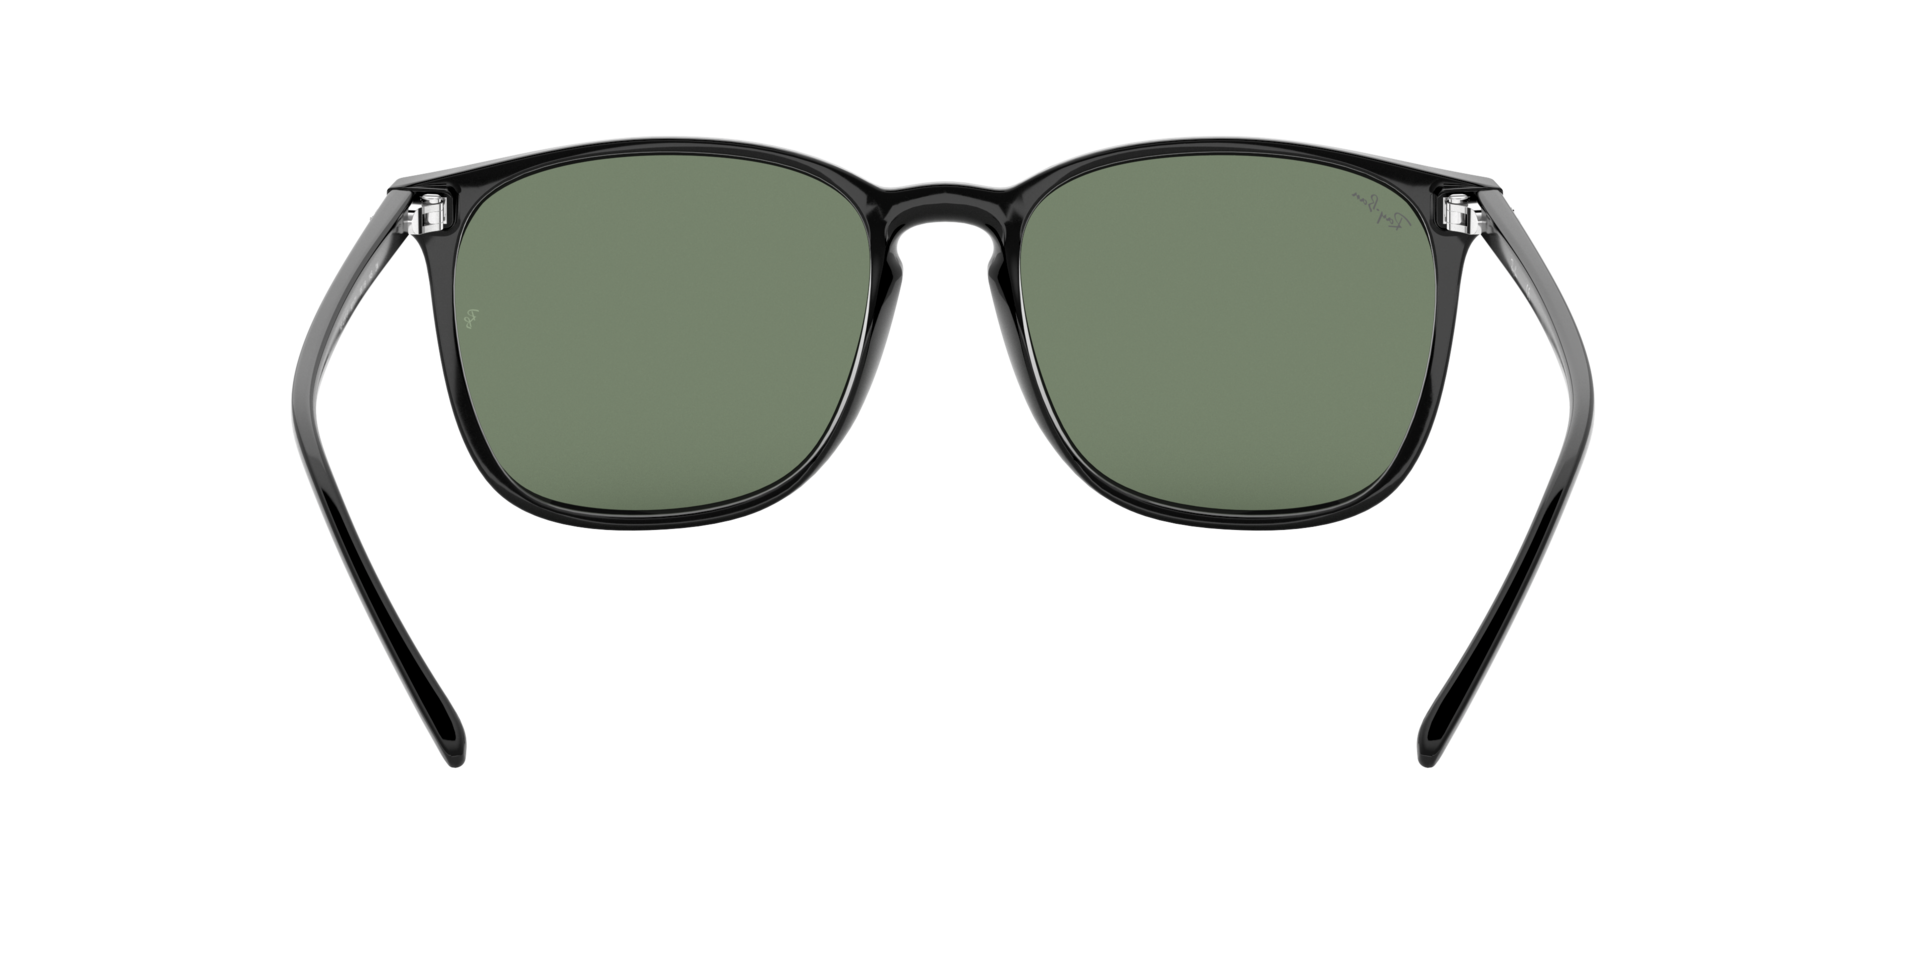 Ray Ban l 個性細邊大方框太陽眼鏡 時尚綠